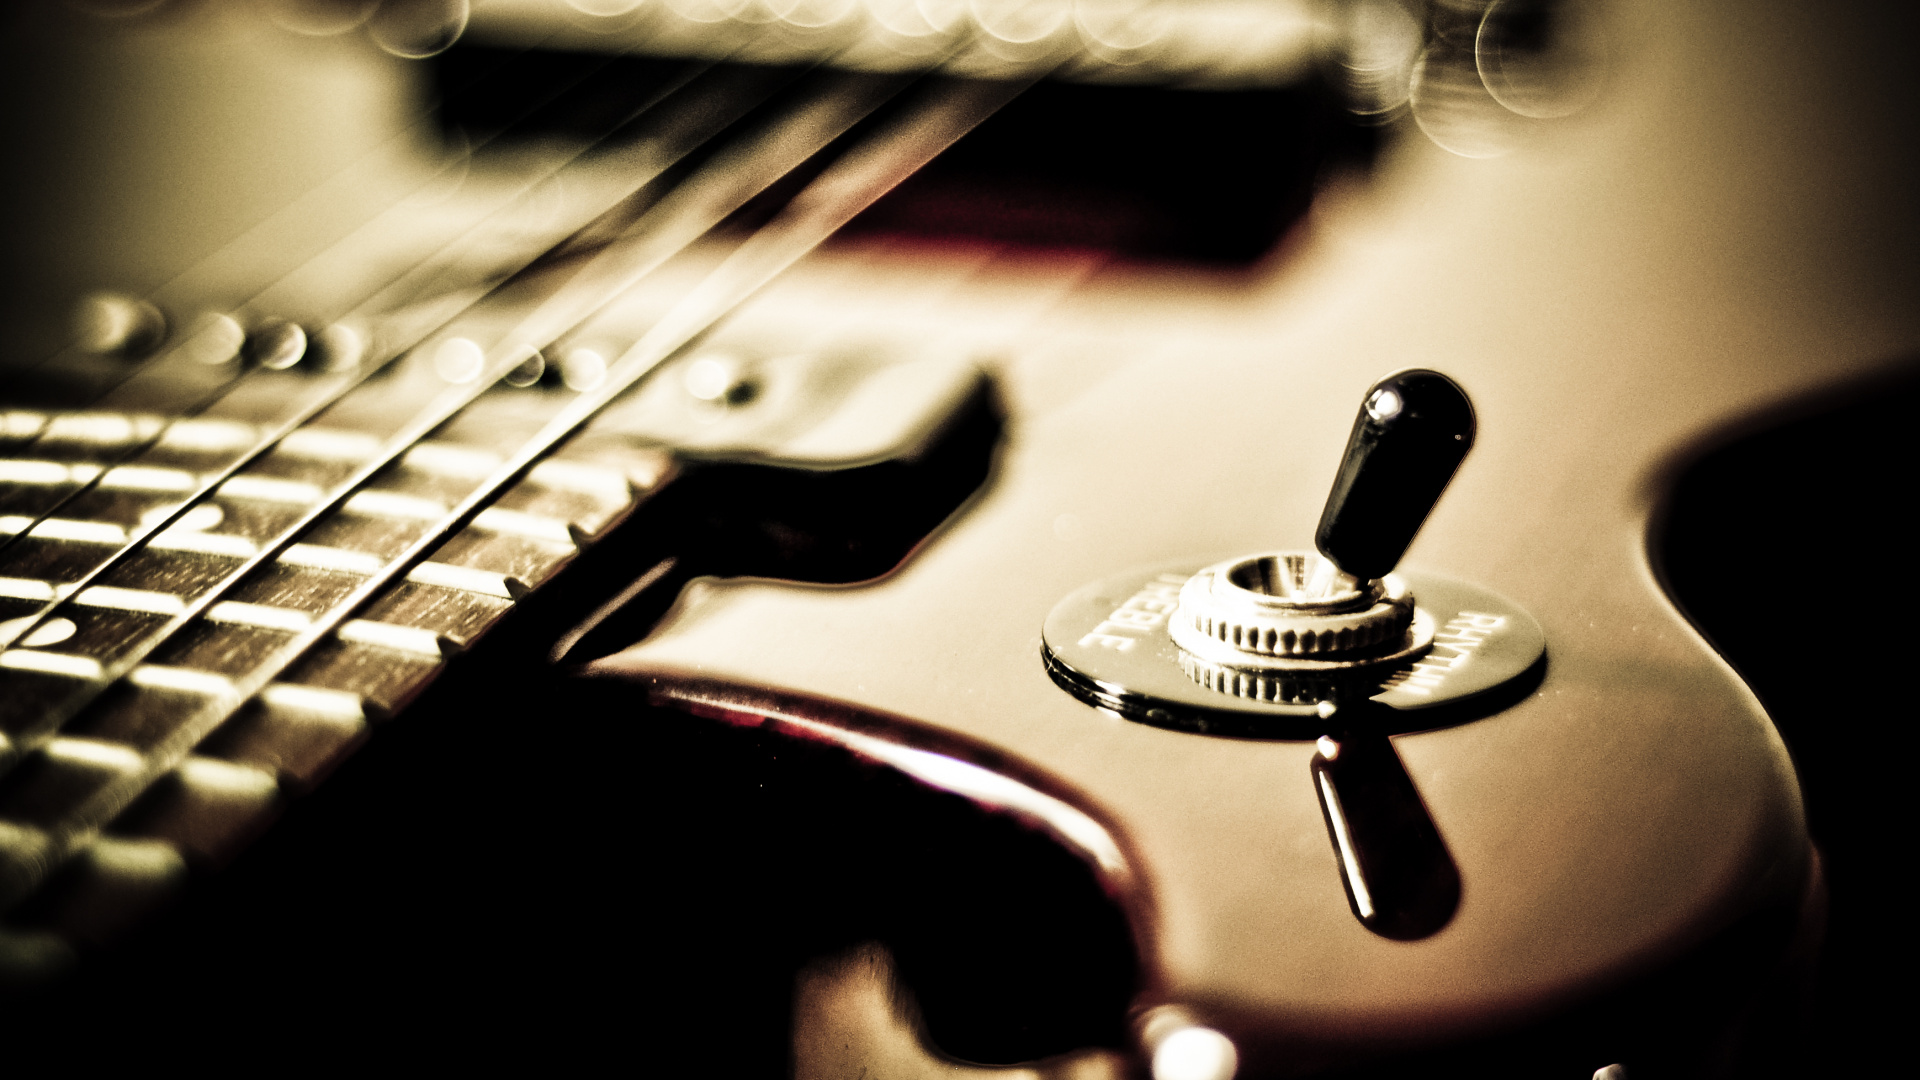 Gitarre, Bass, Gezupfte Saiteninstrumente, Akustikgitarre, Fender Stratocaster. Wallpaper in 1920x1080 Resolution